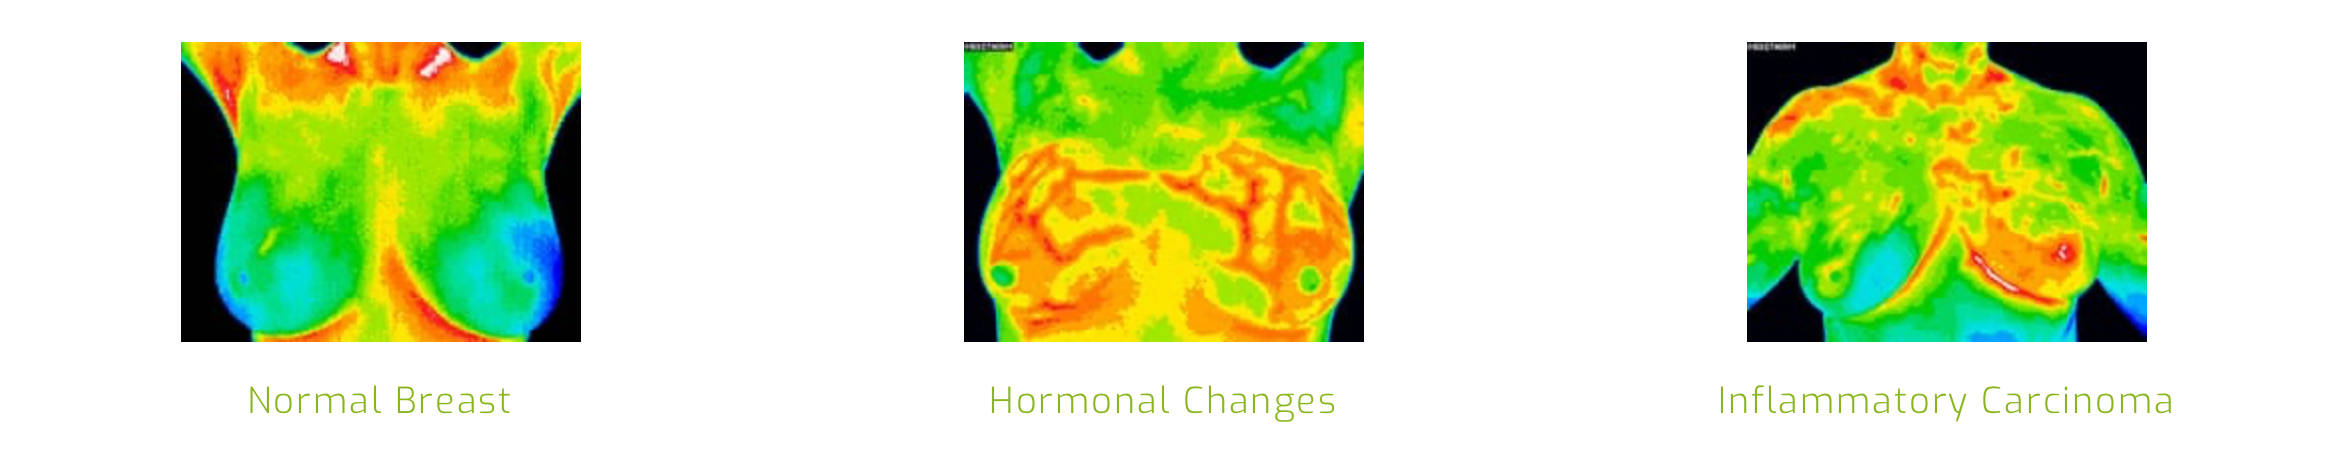 “Ken Je Lichaam en Anticipeer: Thermografische Inzichten in Hormonale Veranderingen”